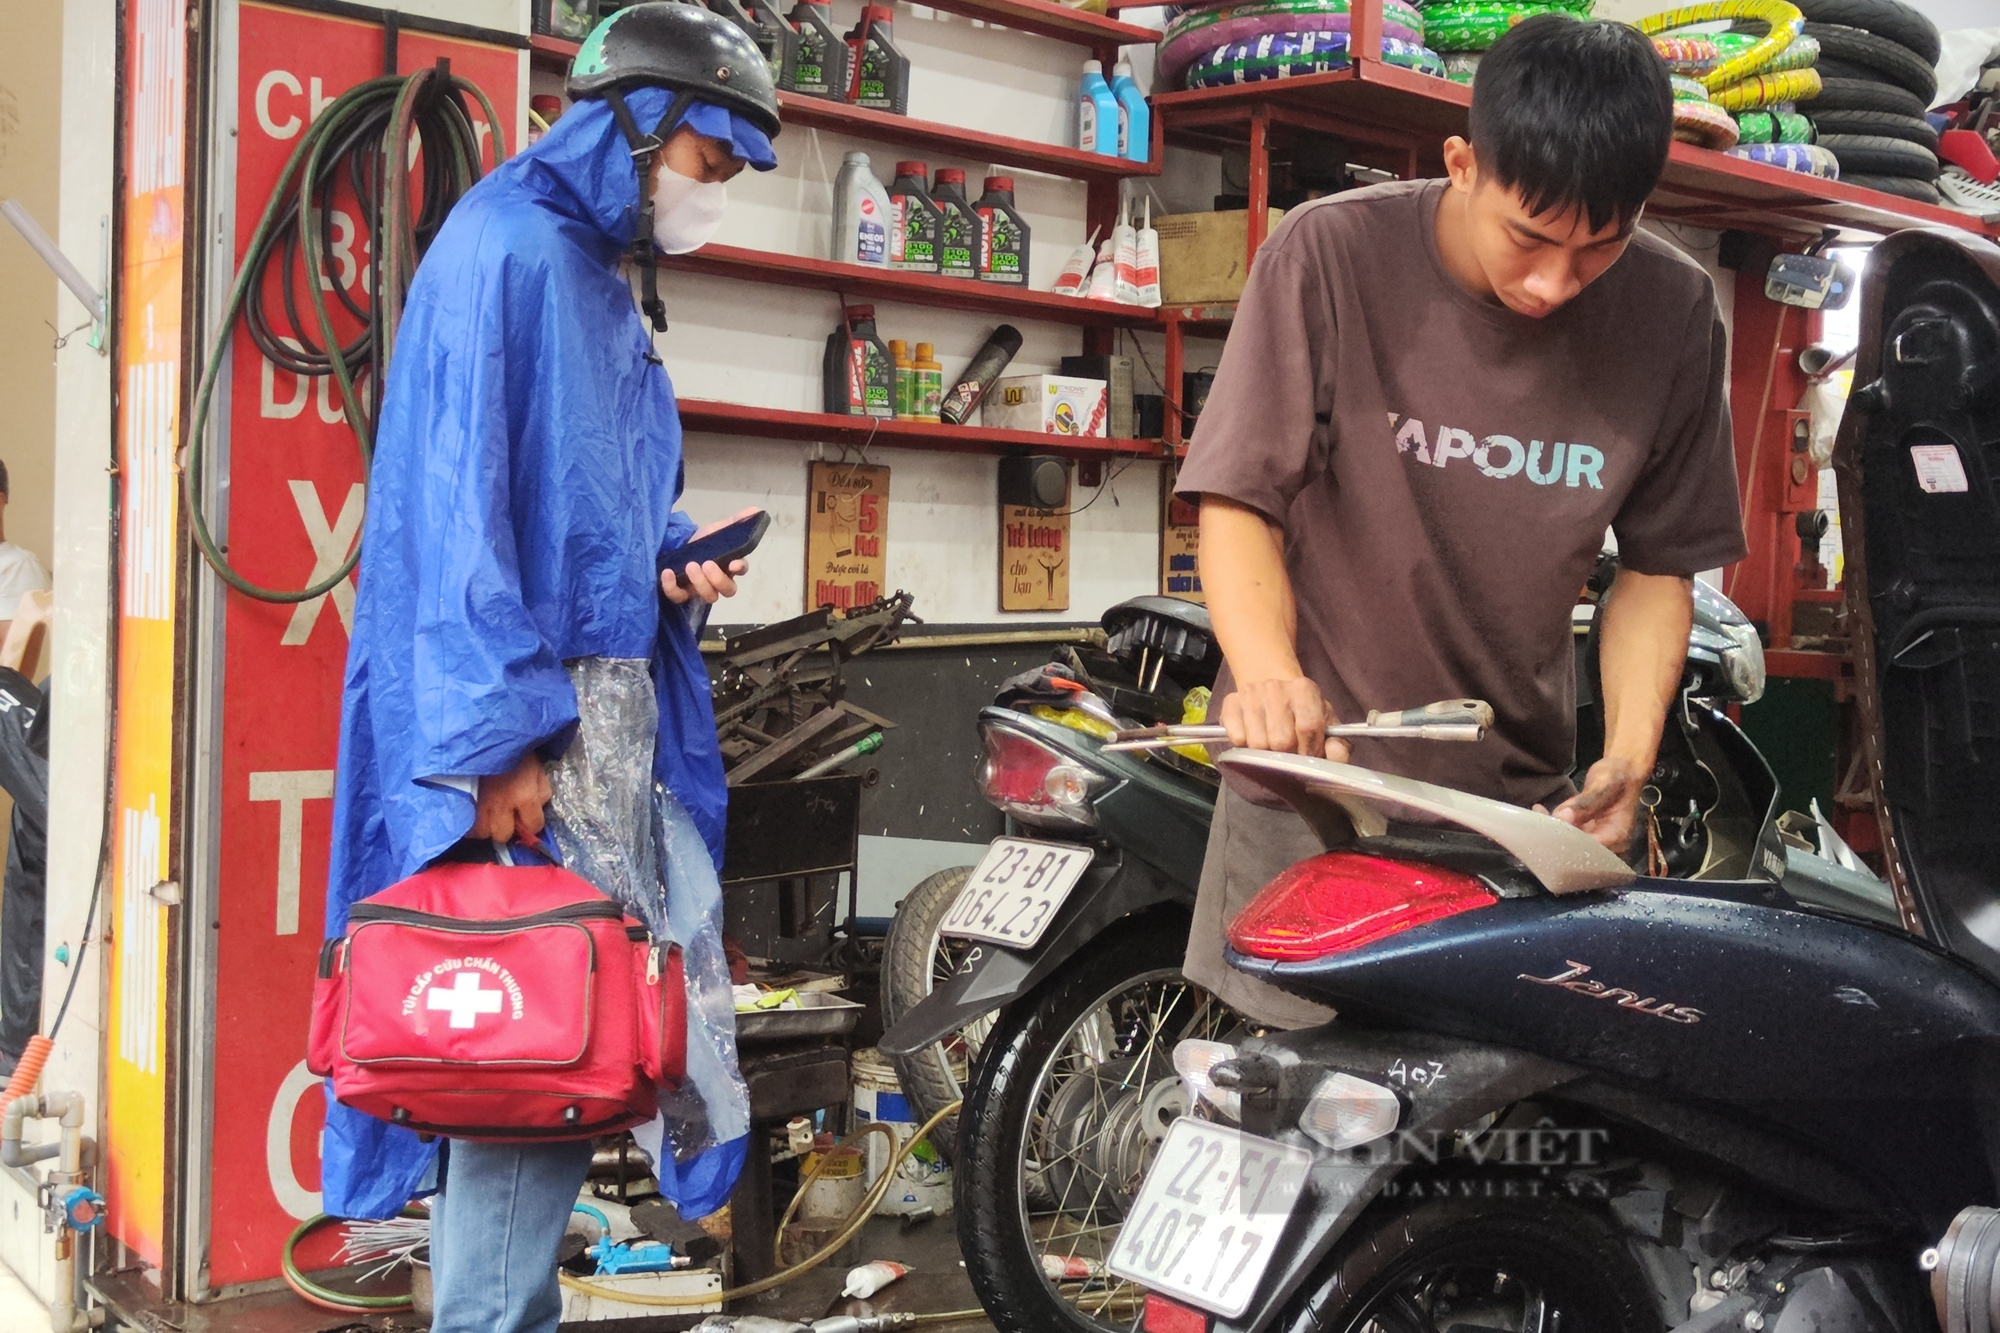 Hà Nội mưa lớn, dân công sở lũ lượt xin nghỉ làm vì xe chết máy - Ảnh 6.